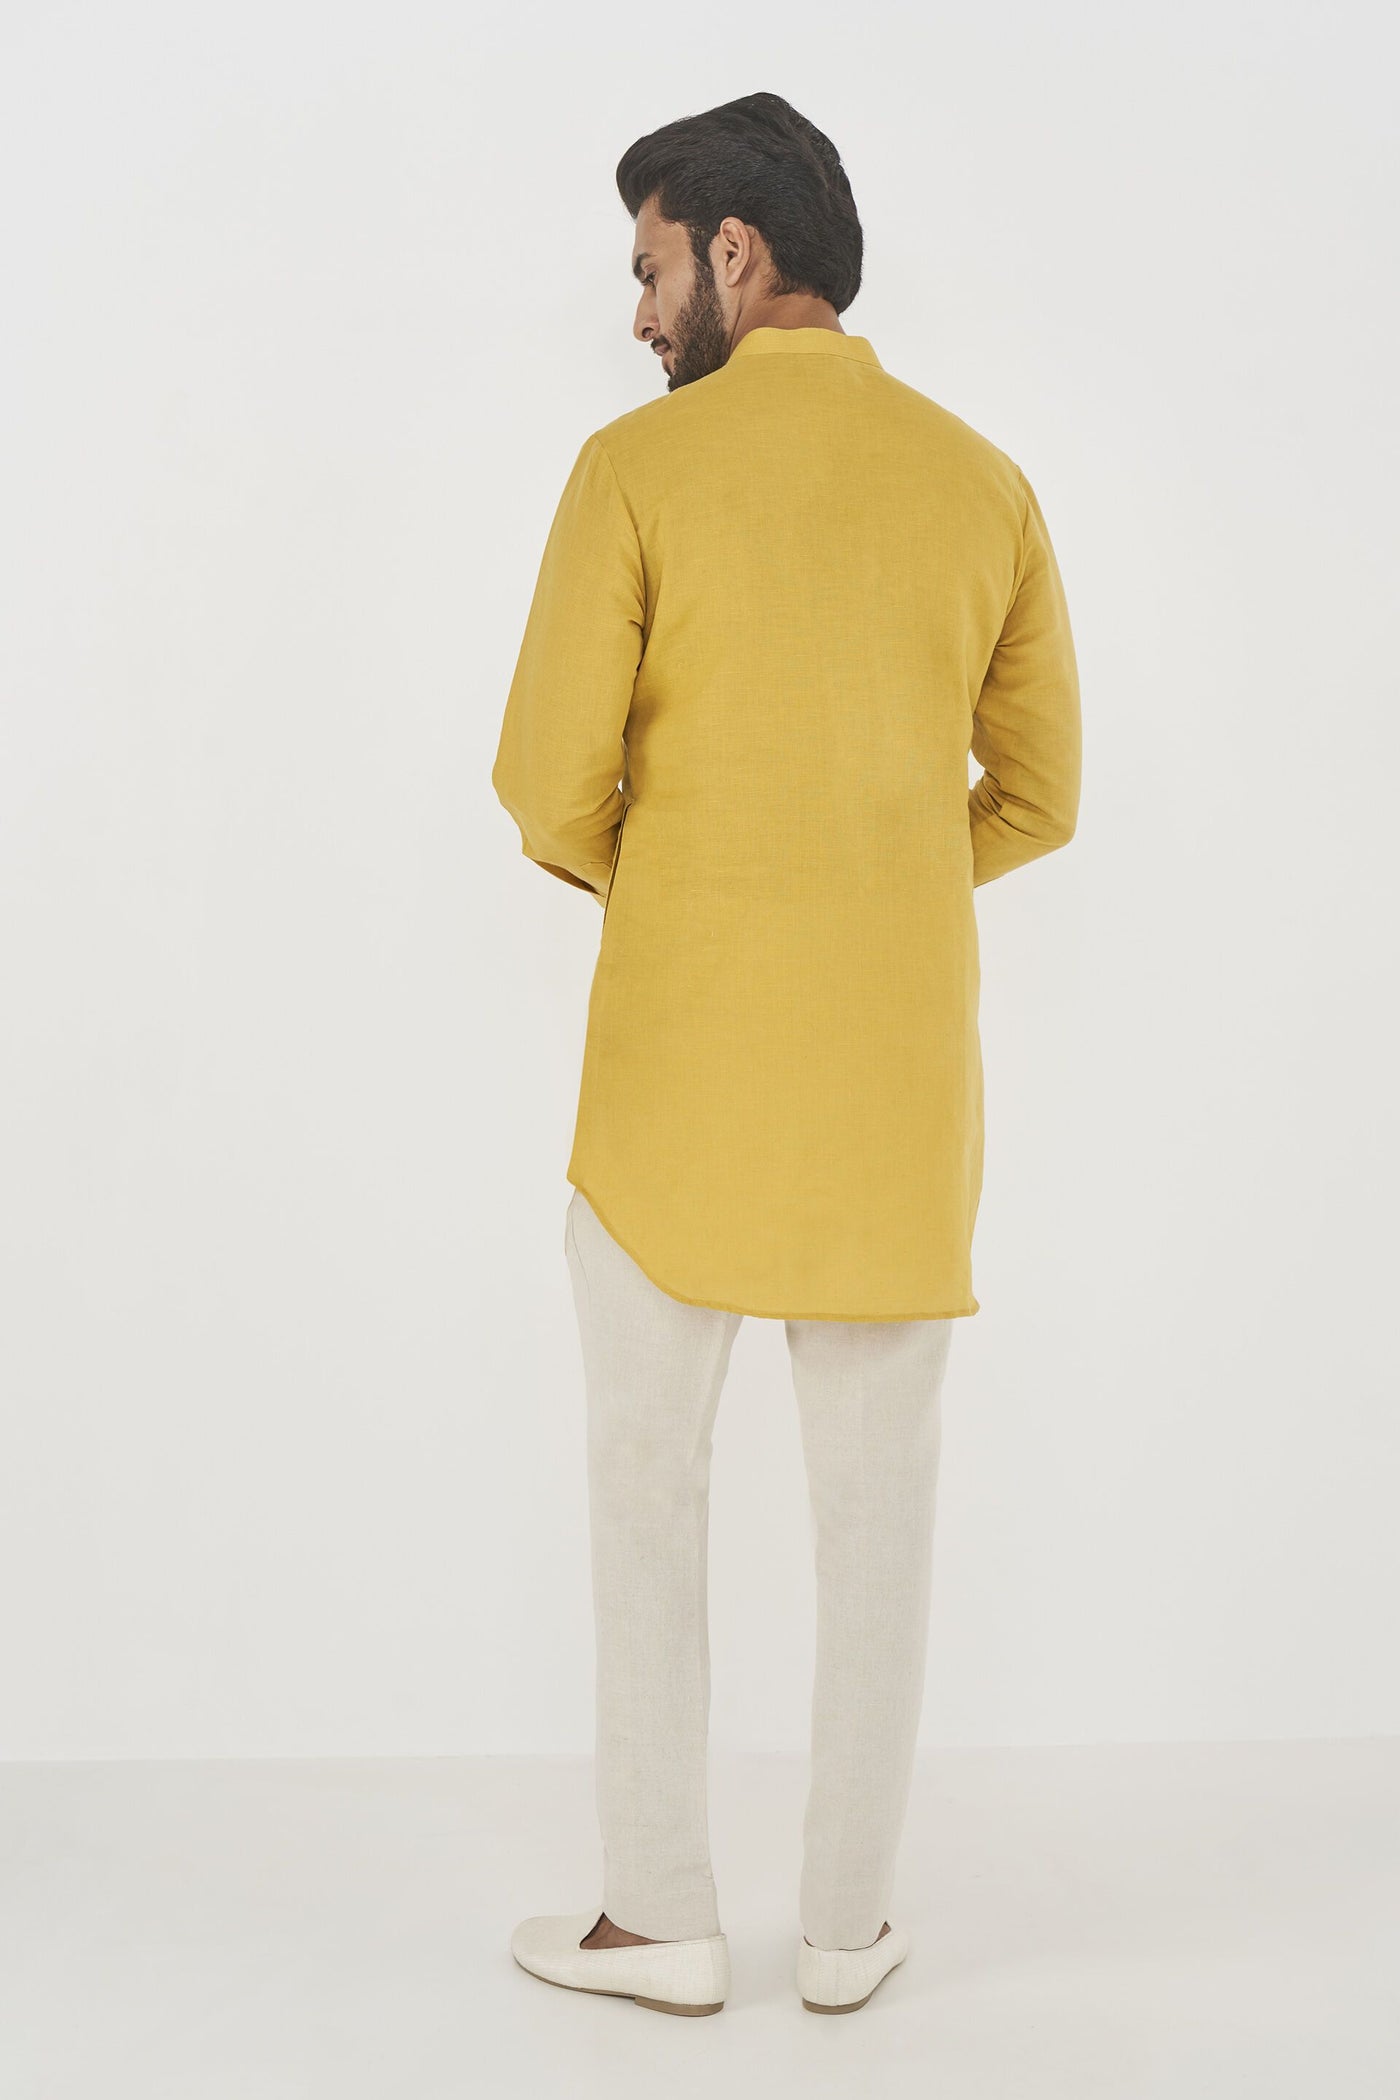 Anita Dongre menswear Raoul Kurta Mustard indian designer wear online shopping melange singapore